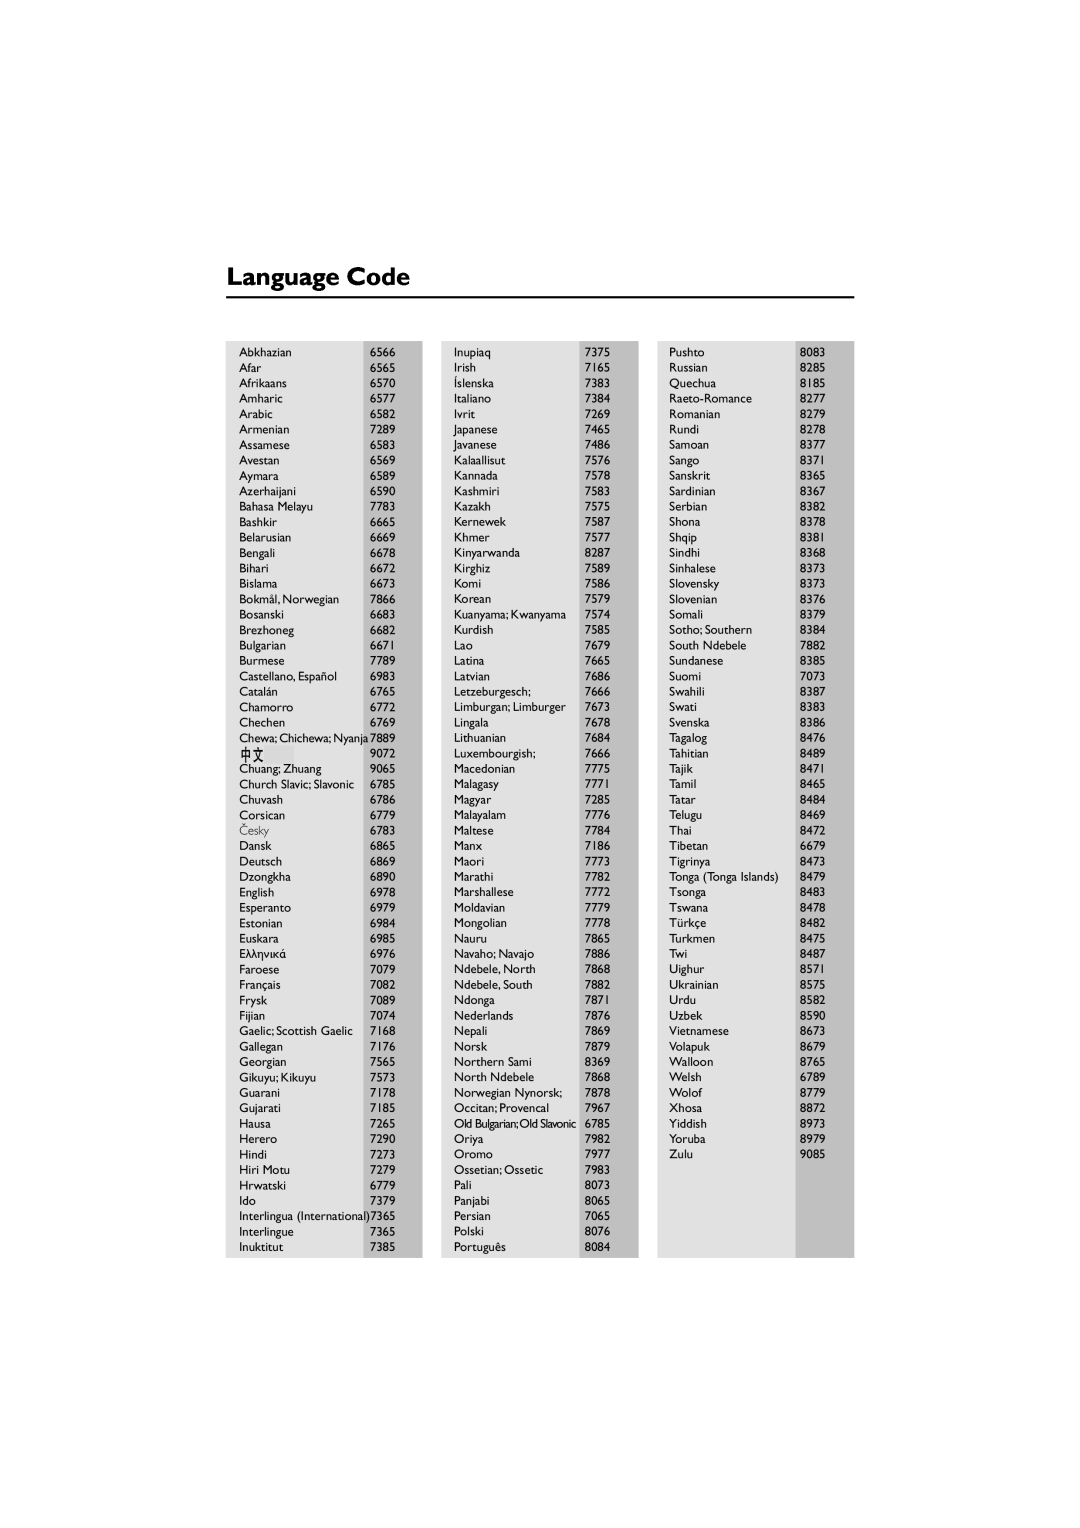 Philips MCD708 Language Code, Chewa Chichewa Nyanja, Church Slavic Slavonic, Gaelic Scottish Gaelic, Kuanyama Kwanyama 